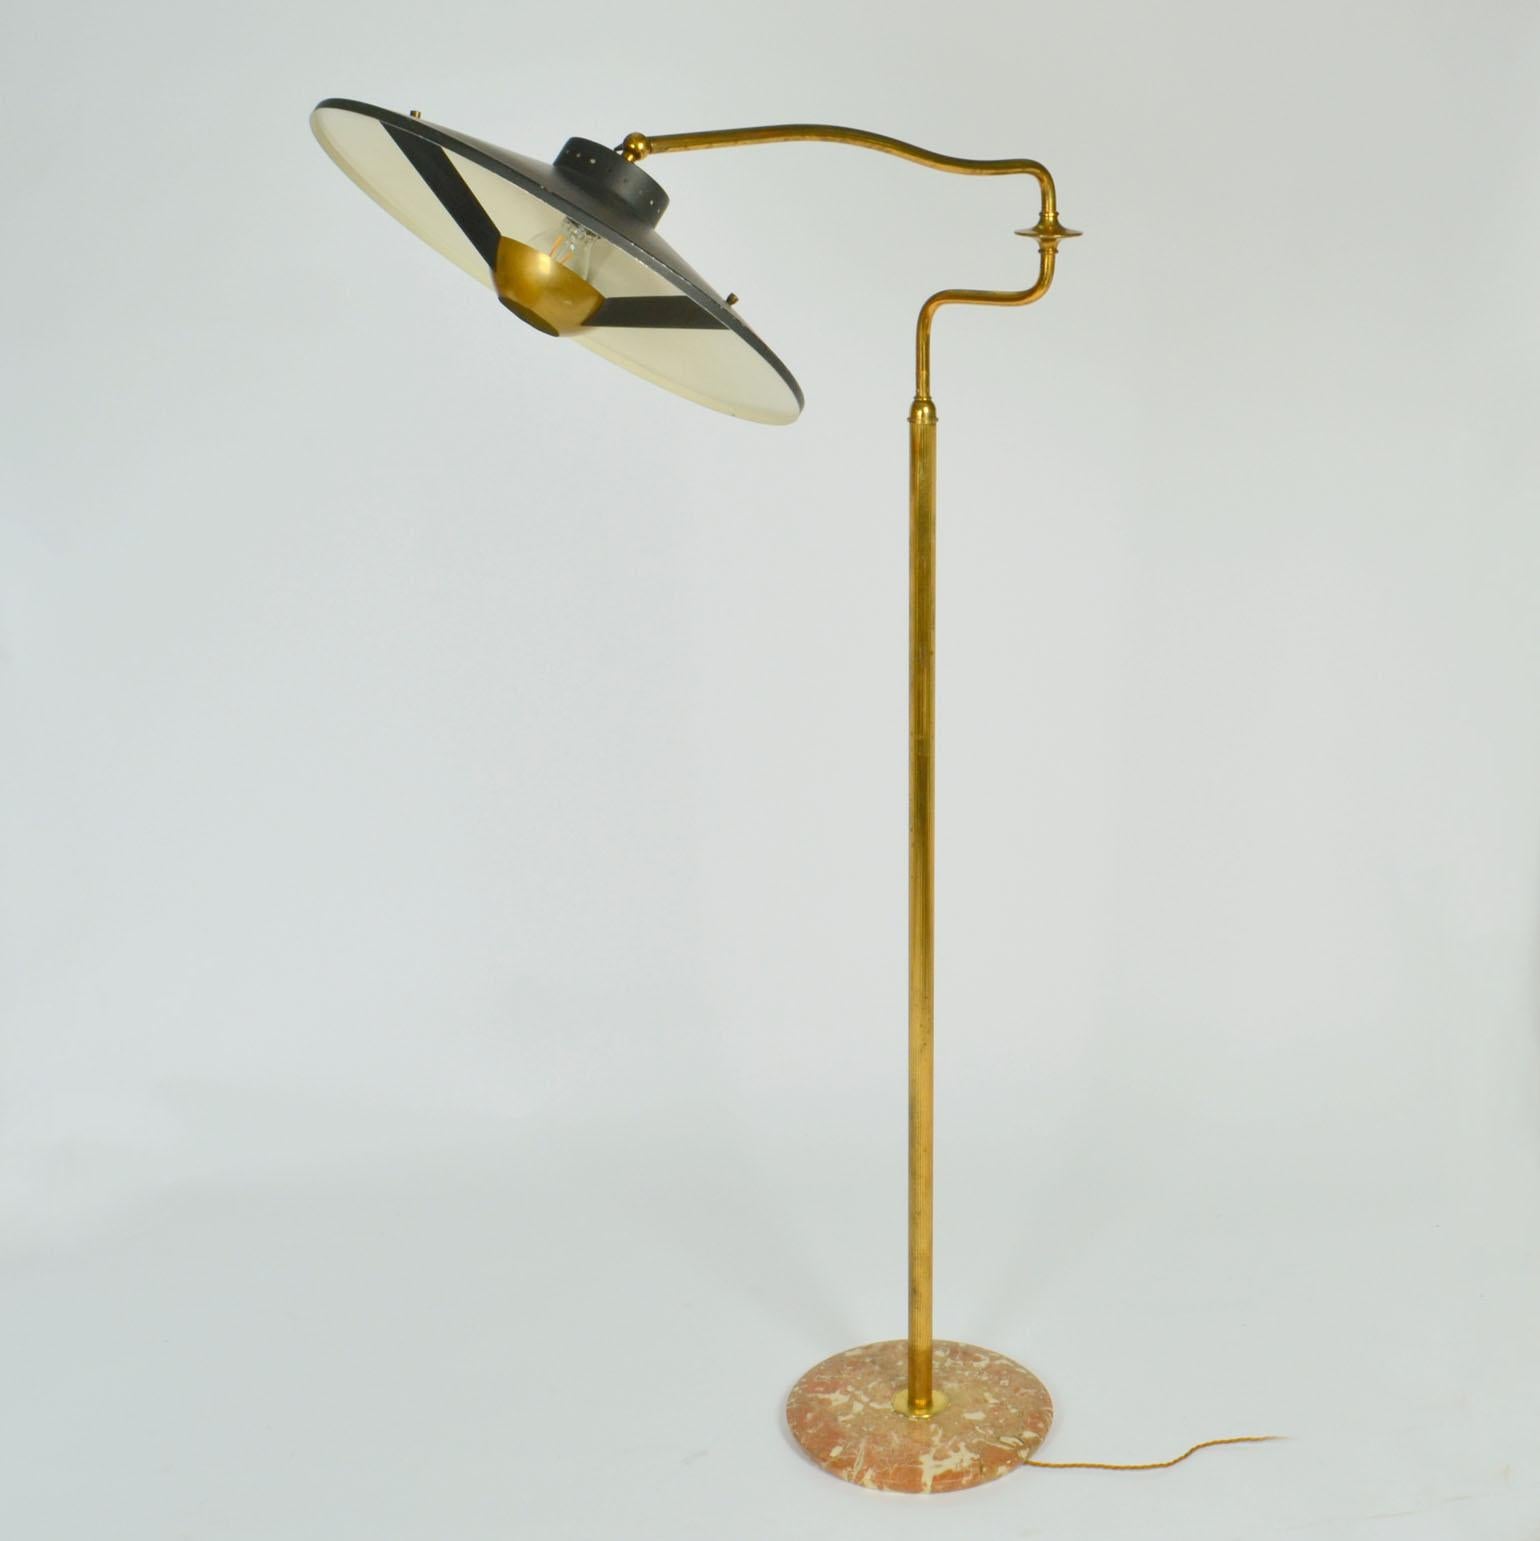 Italian Swing Arm Brass Floor Lamp, Original Black Shade, 1950's Stilnovo Style For Sale 3